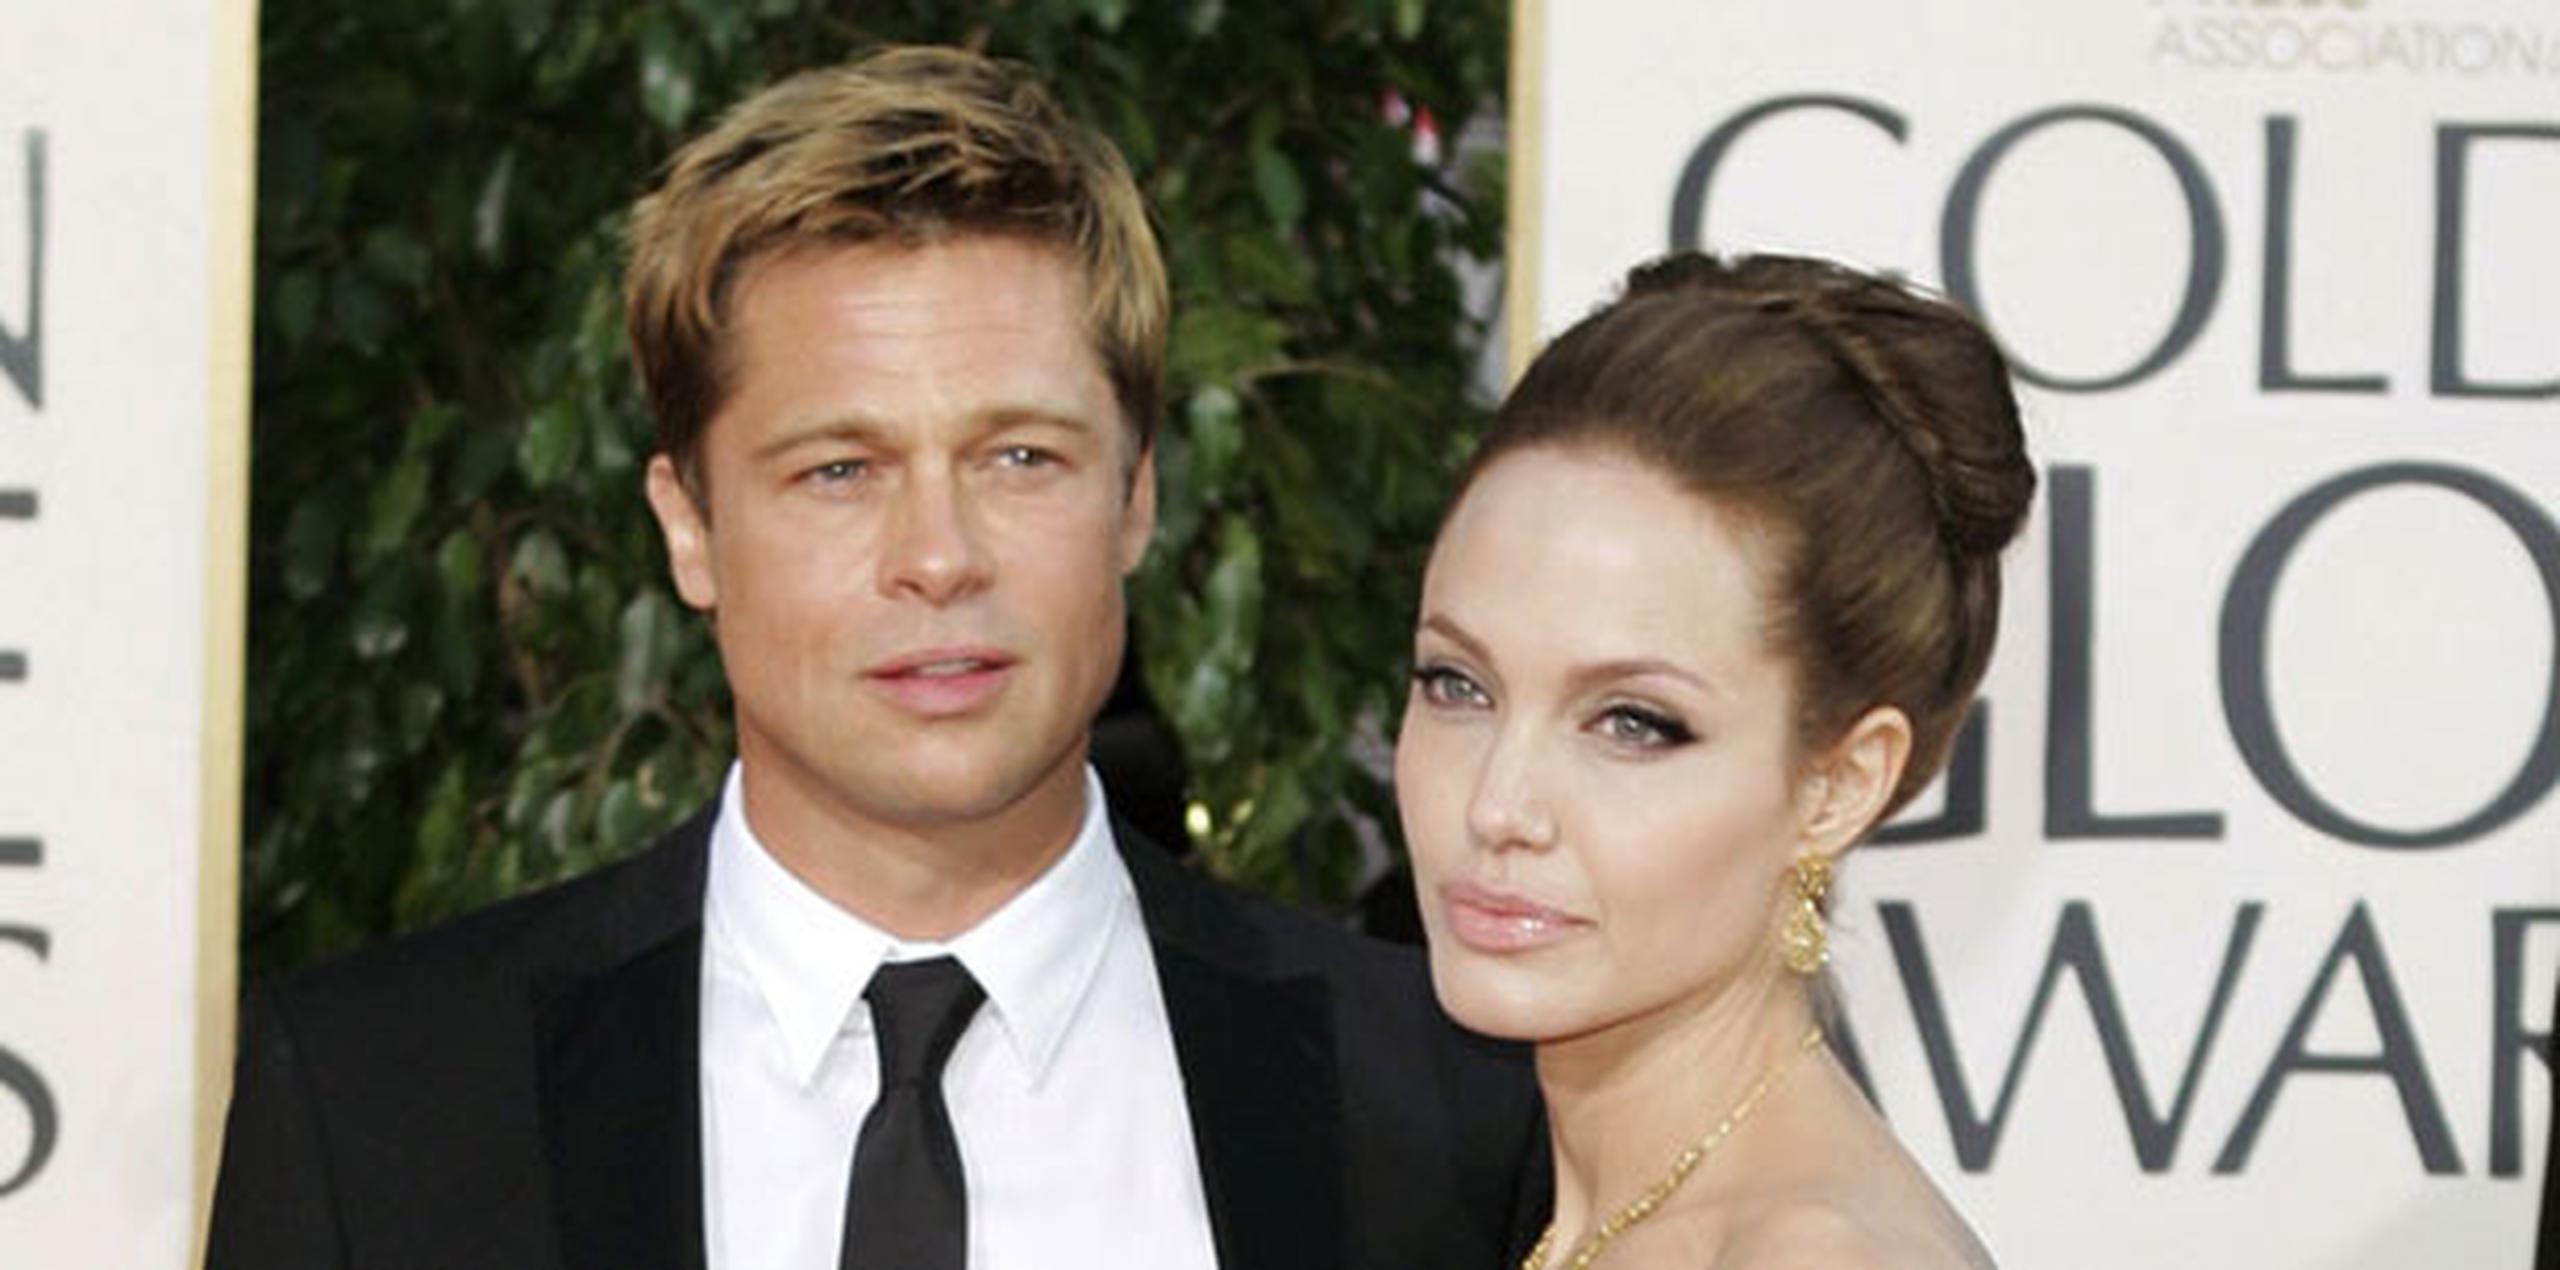 Angelina Jolie y Brad Pitt tienen seis hijos de entre 6 y 16 años, tres adoptados -el camboyano Maddox, el vietnamita Pax y la etíope Zahara- y tres biológicos -Shiloh y los gemelos Knox y Vivienne-, y en la demanda de divorcio fue la actriz la que reclamó su custodia, que obtuvo en enero. (Archivo)